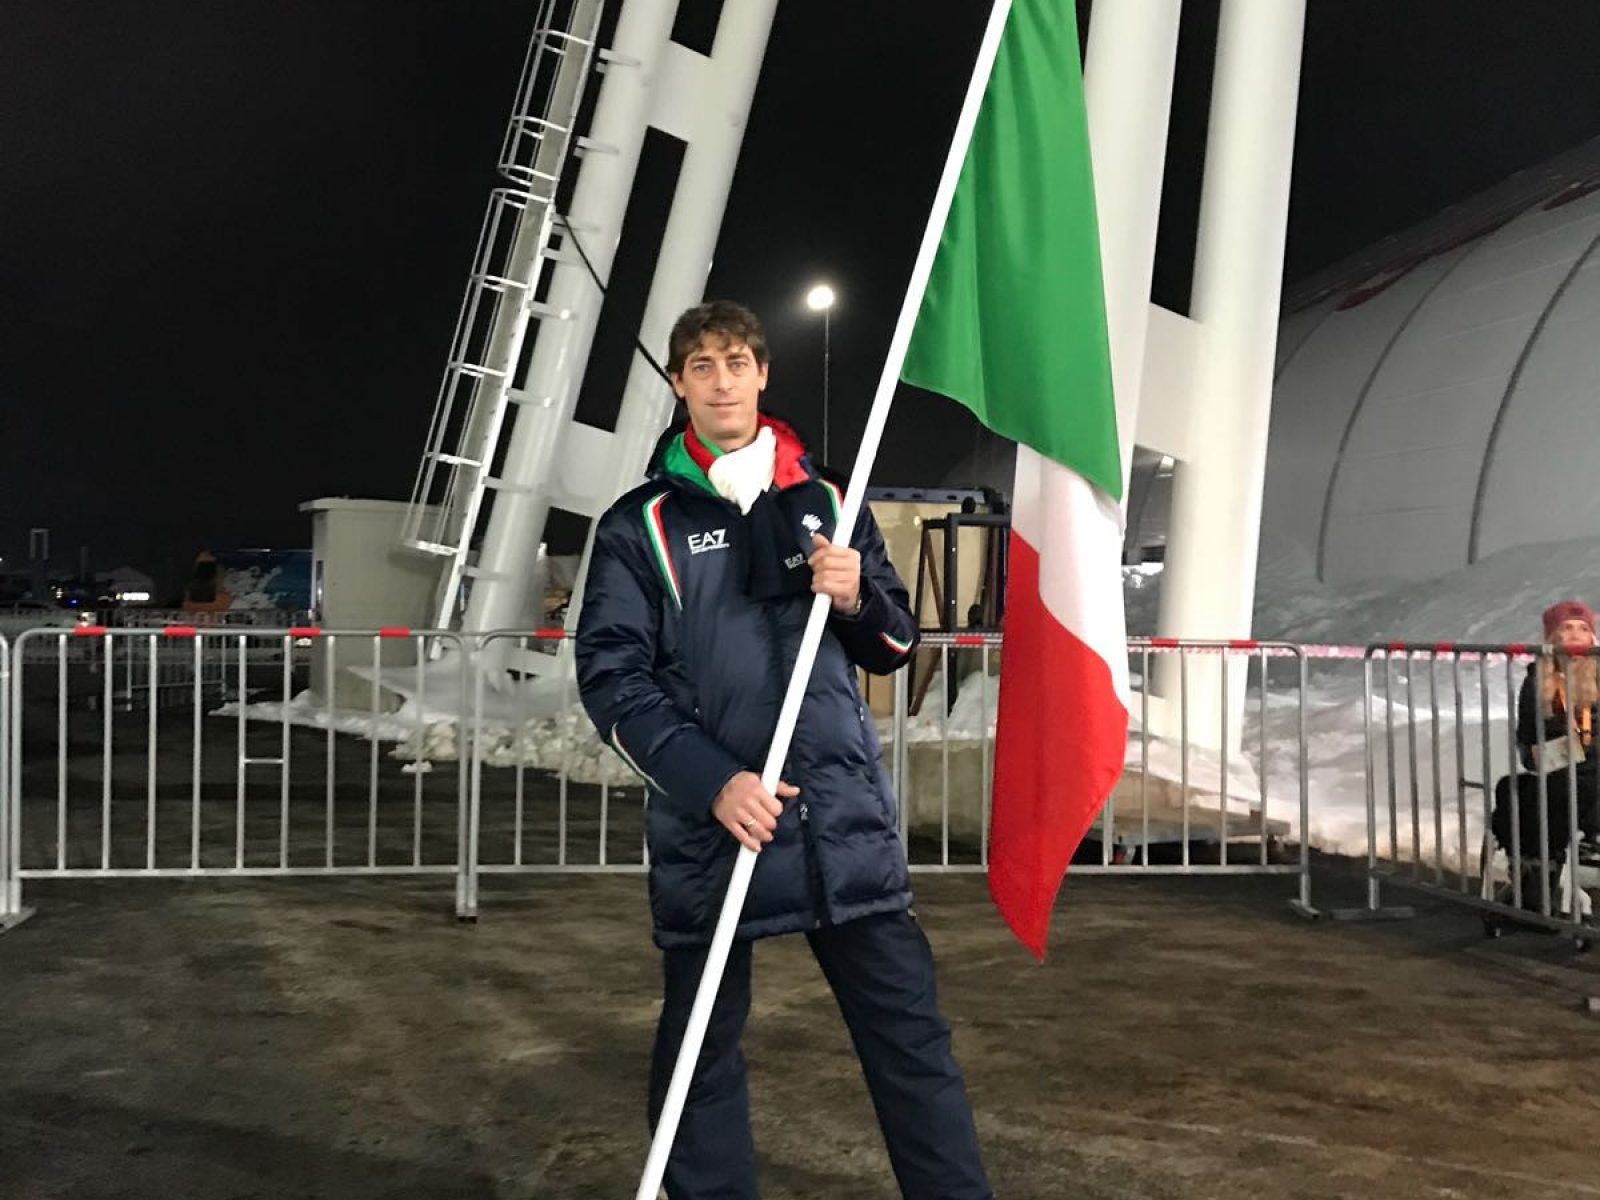 Florian Planker, der Fahnenträger bei den Paralympischen Spielen 2018